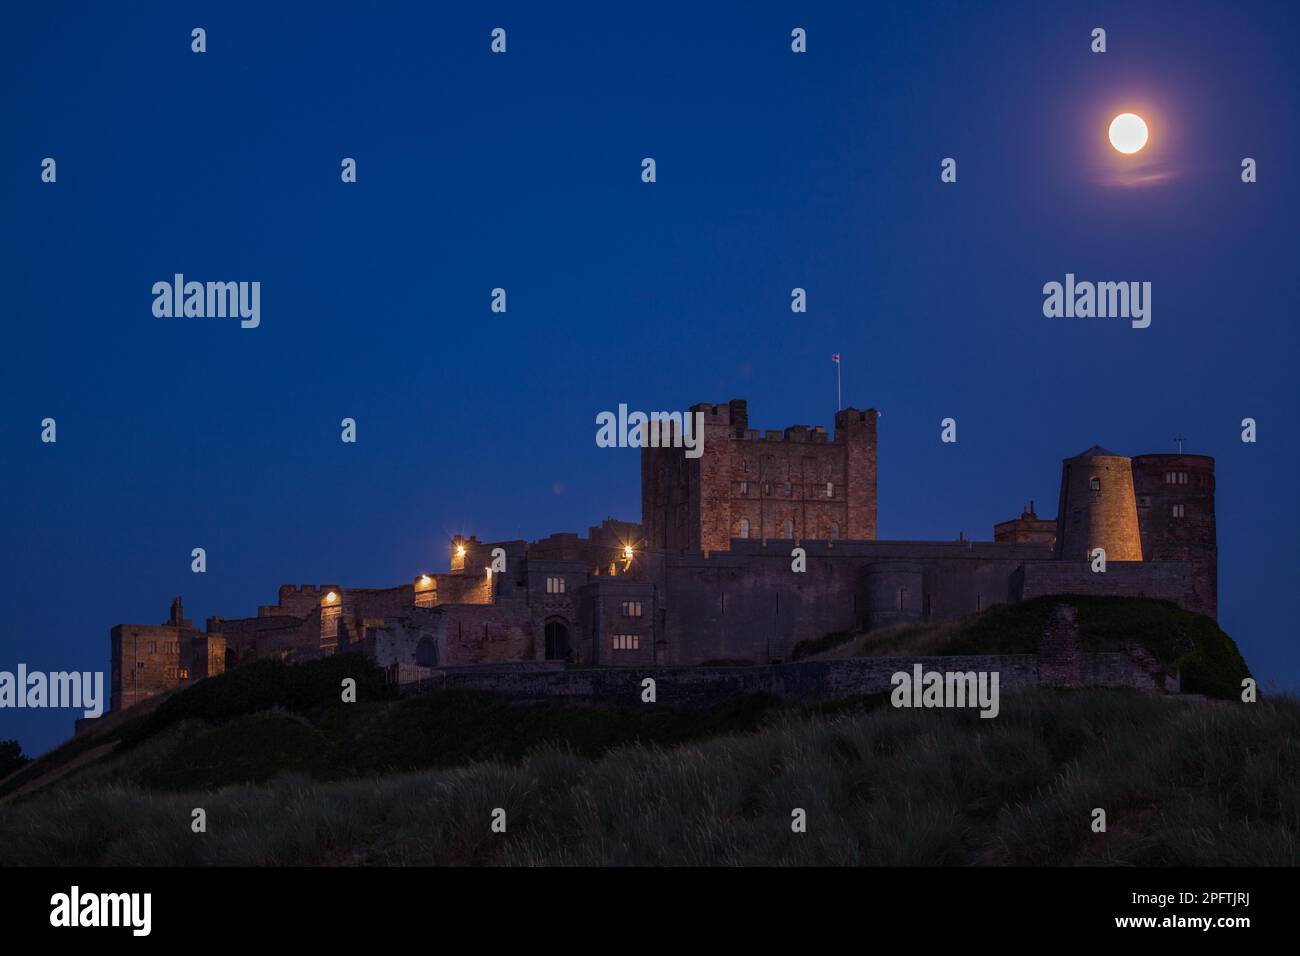 Castle, Bamburgh, Northumberland, UK Stock Photo